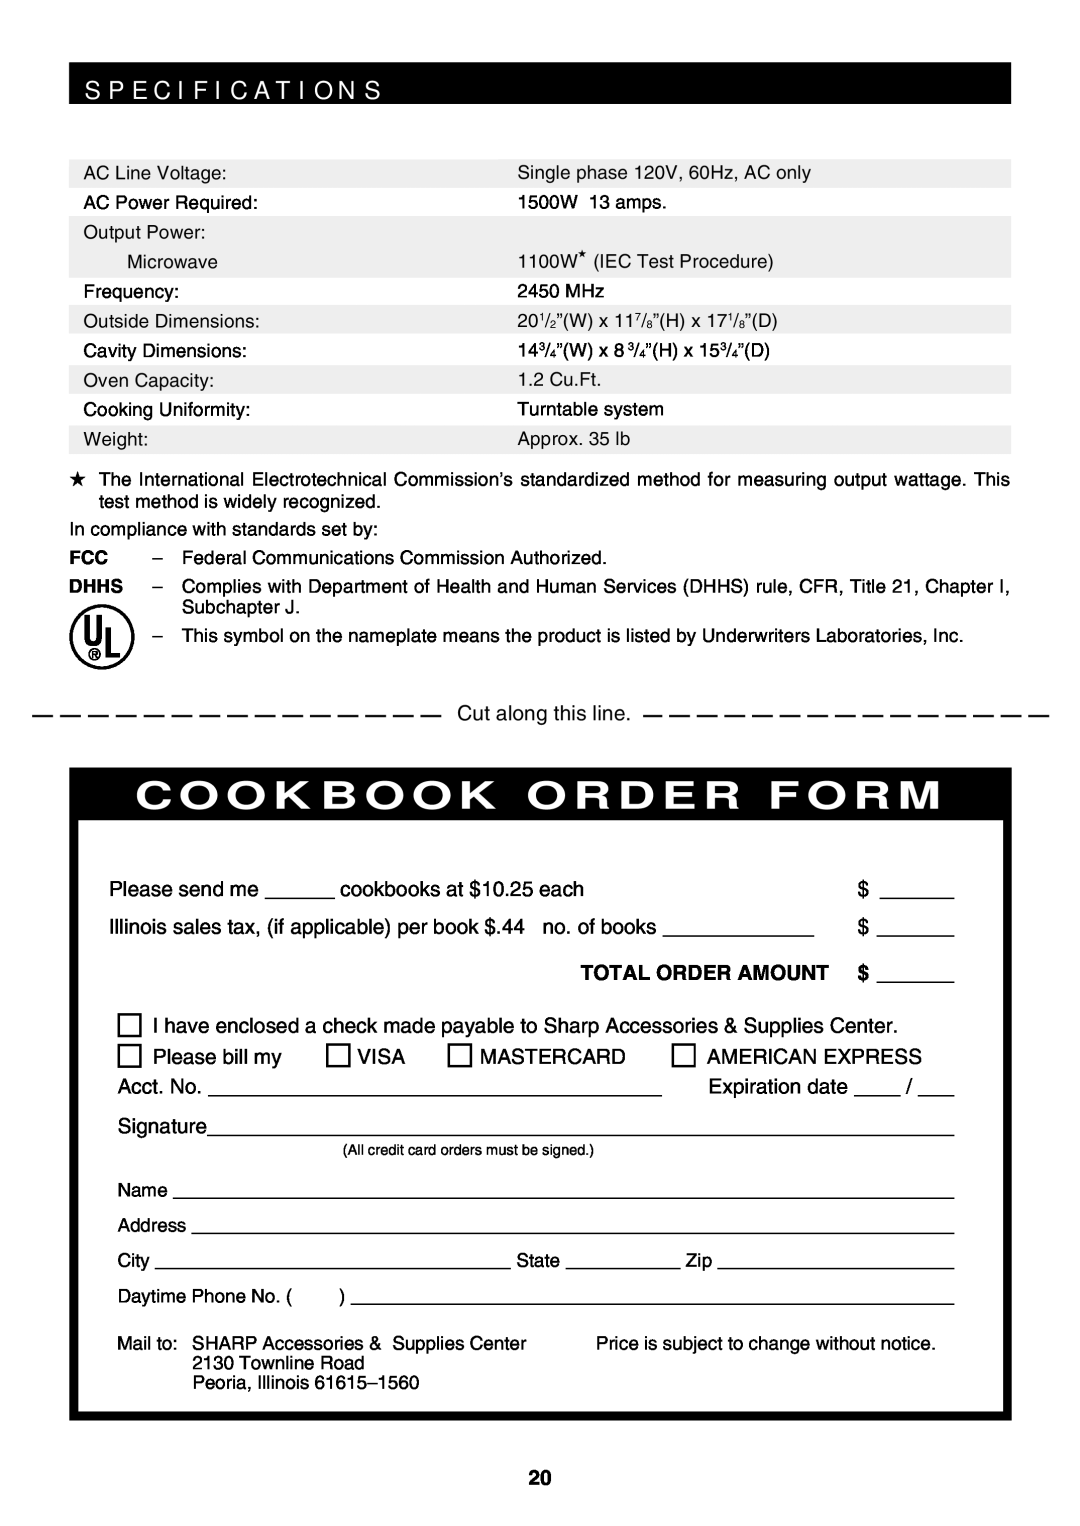 Sharp R-319F manual S P E C I F I C A T I O N S, Cookbook Order Form, Total Order Amount 